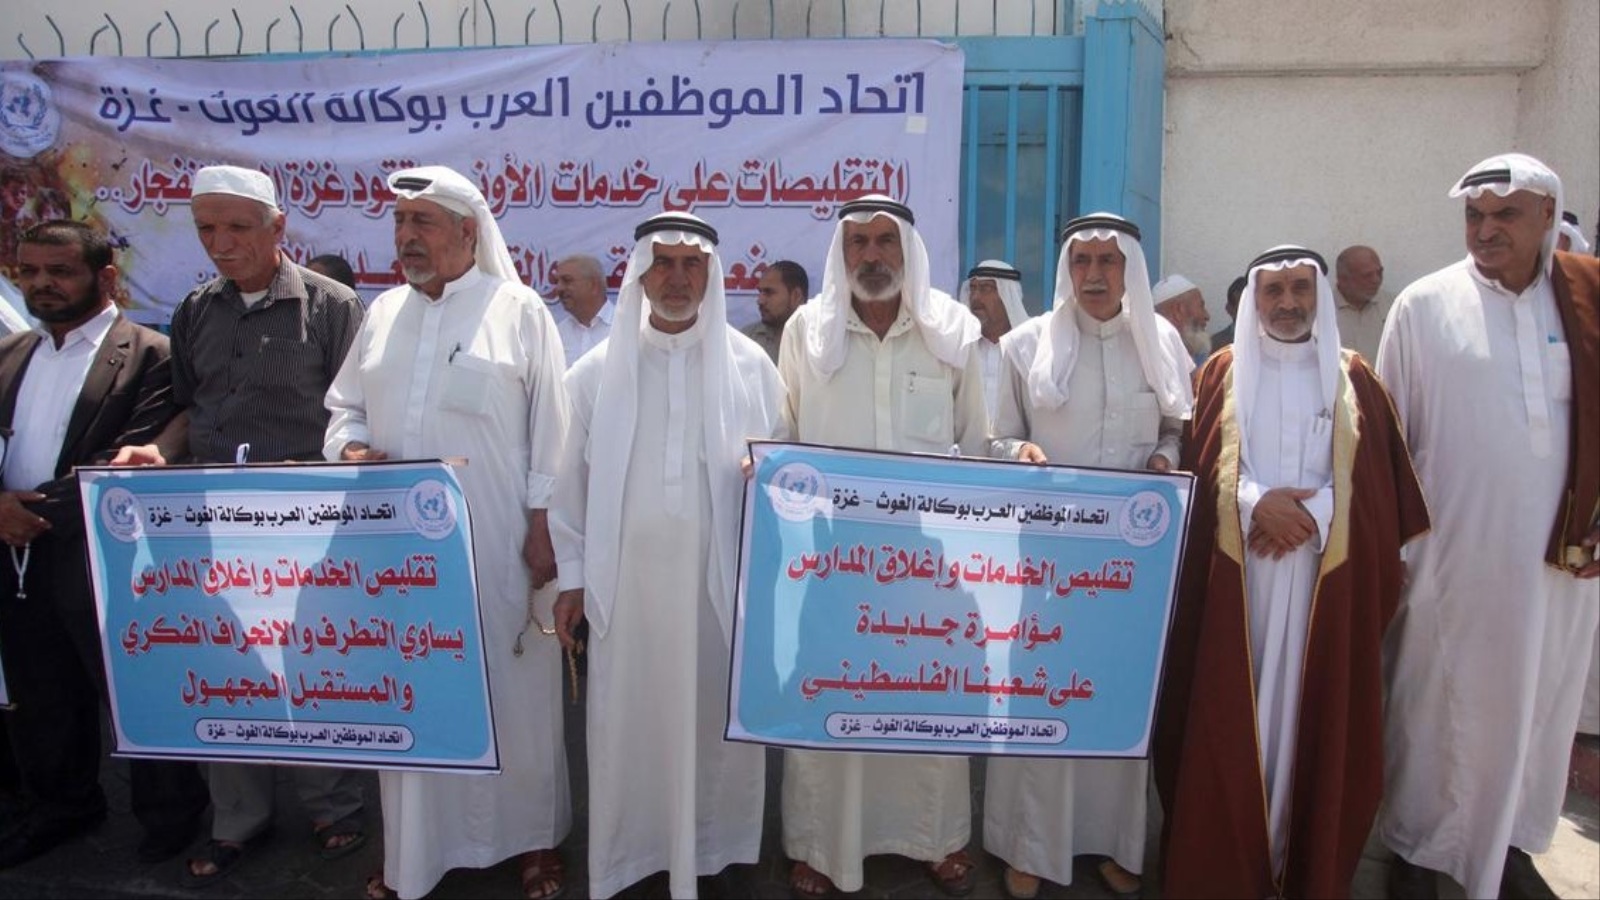 أعضاء باتحاد الموظفين العرب في الوكالة أثناء الوقفة الاحتجاجية بغزة (الأناضول)